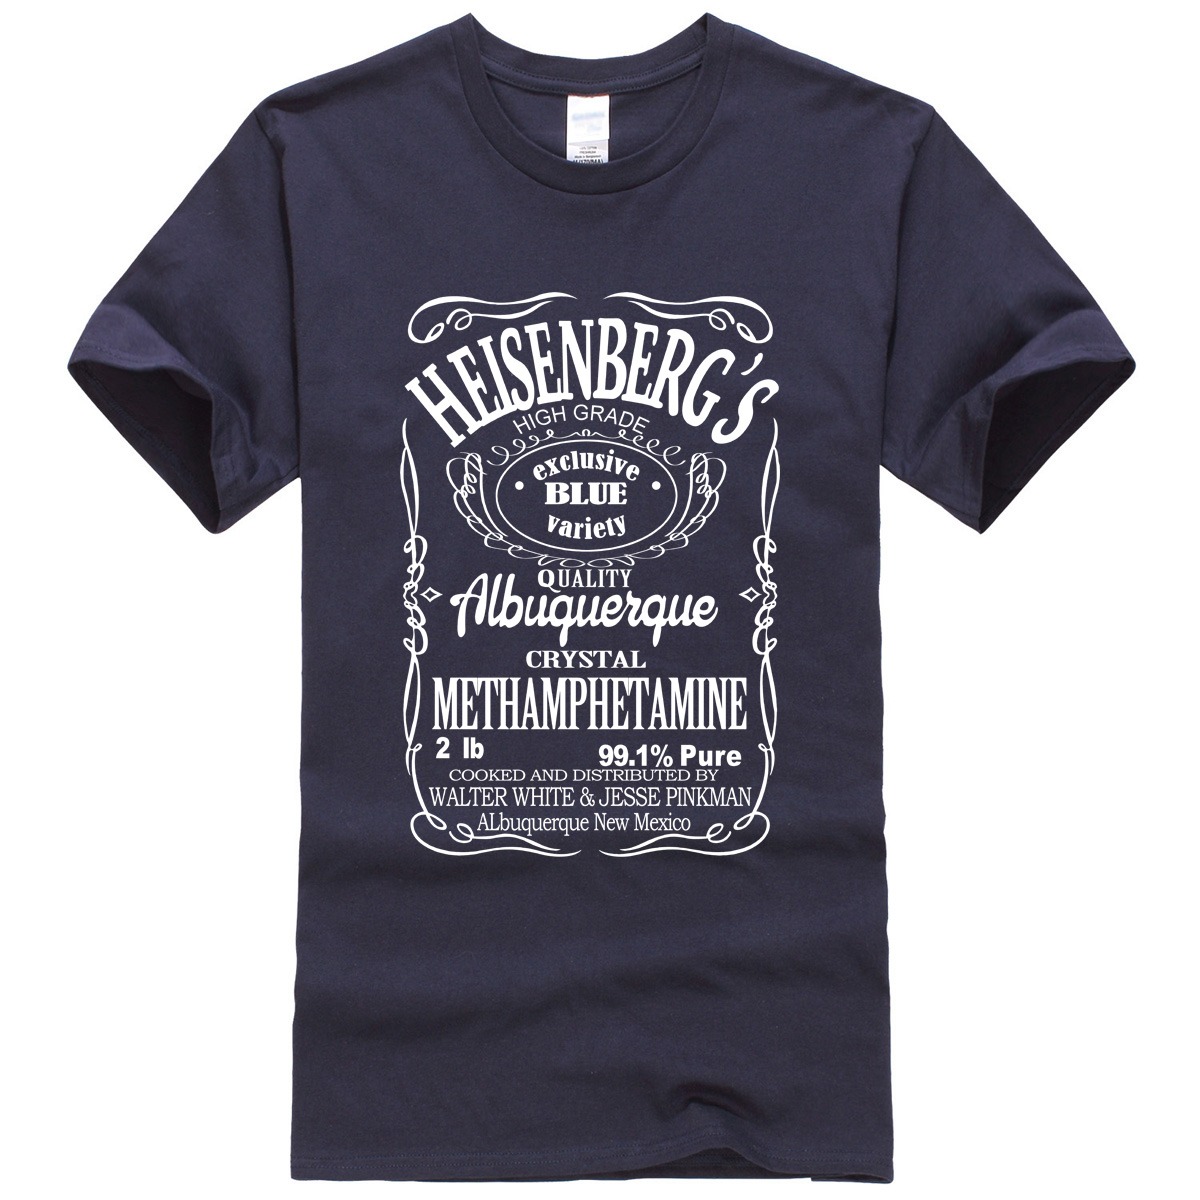 Camiseta Breaking Bad Heisenberg 2020 3